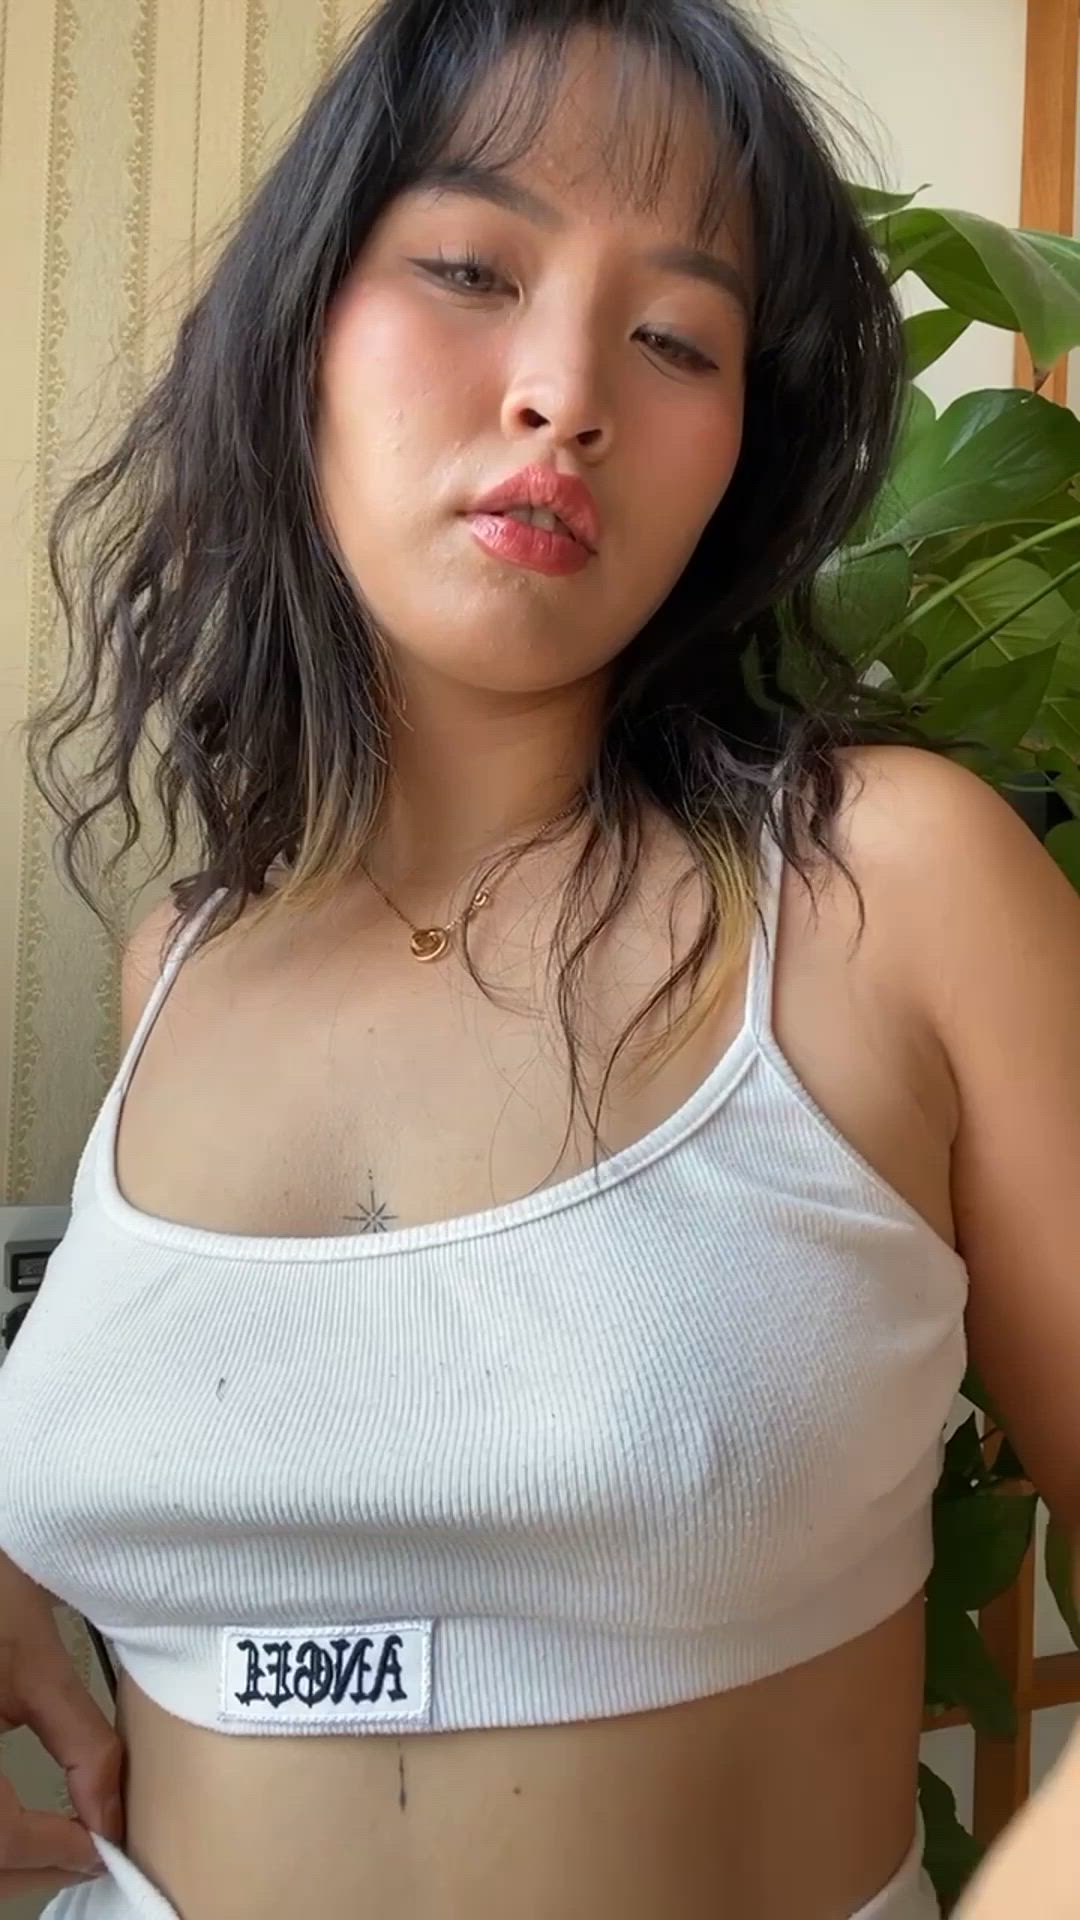 Asian porn video with onlyfans model leeanfoxxx <strong>@leeanfoxxx</strong>